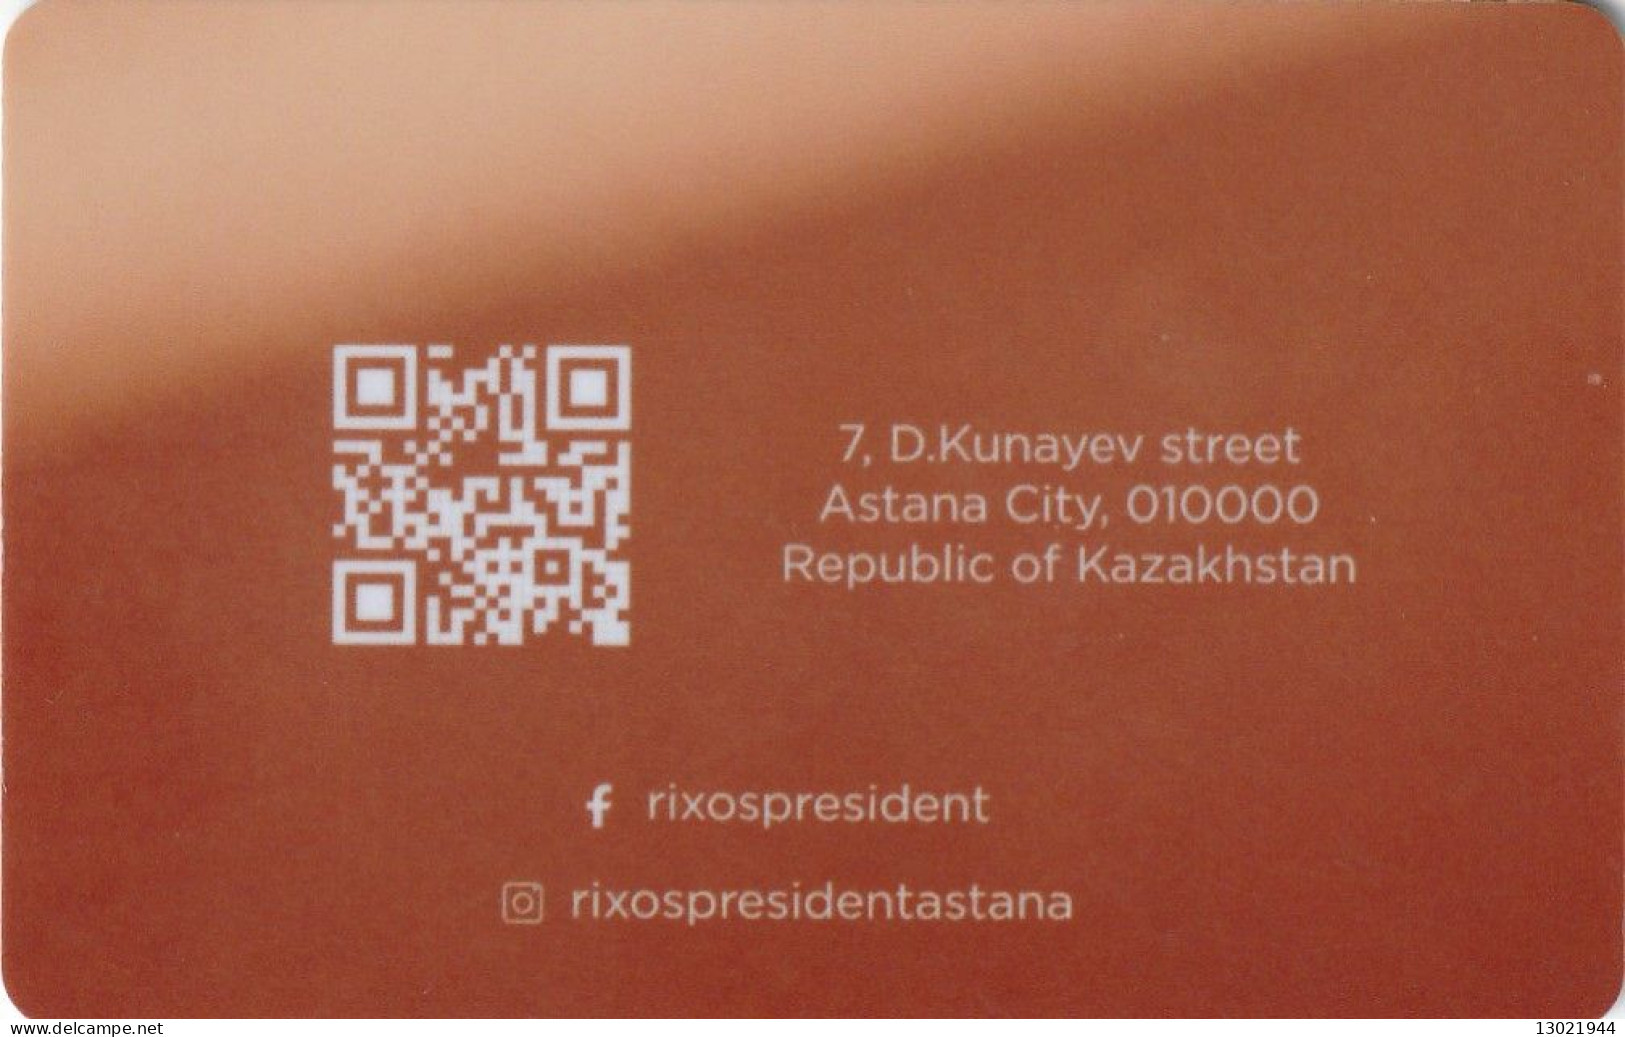 KAZAKISTAN  KEY HOTEL  Rixos President Astana - Cartes D'hotel